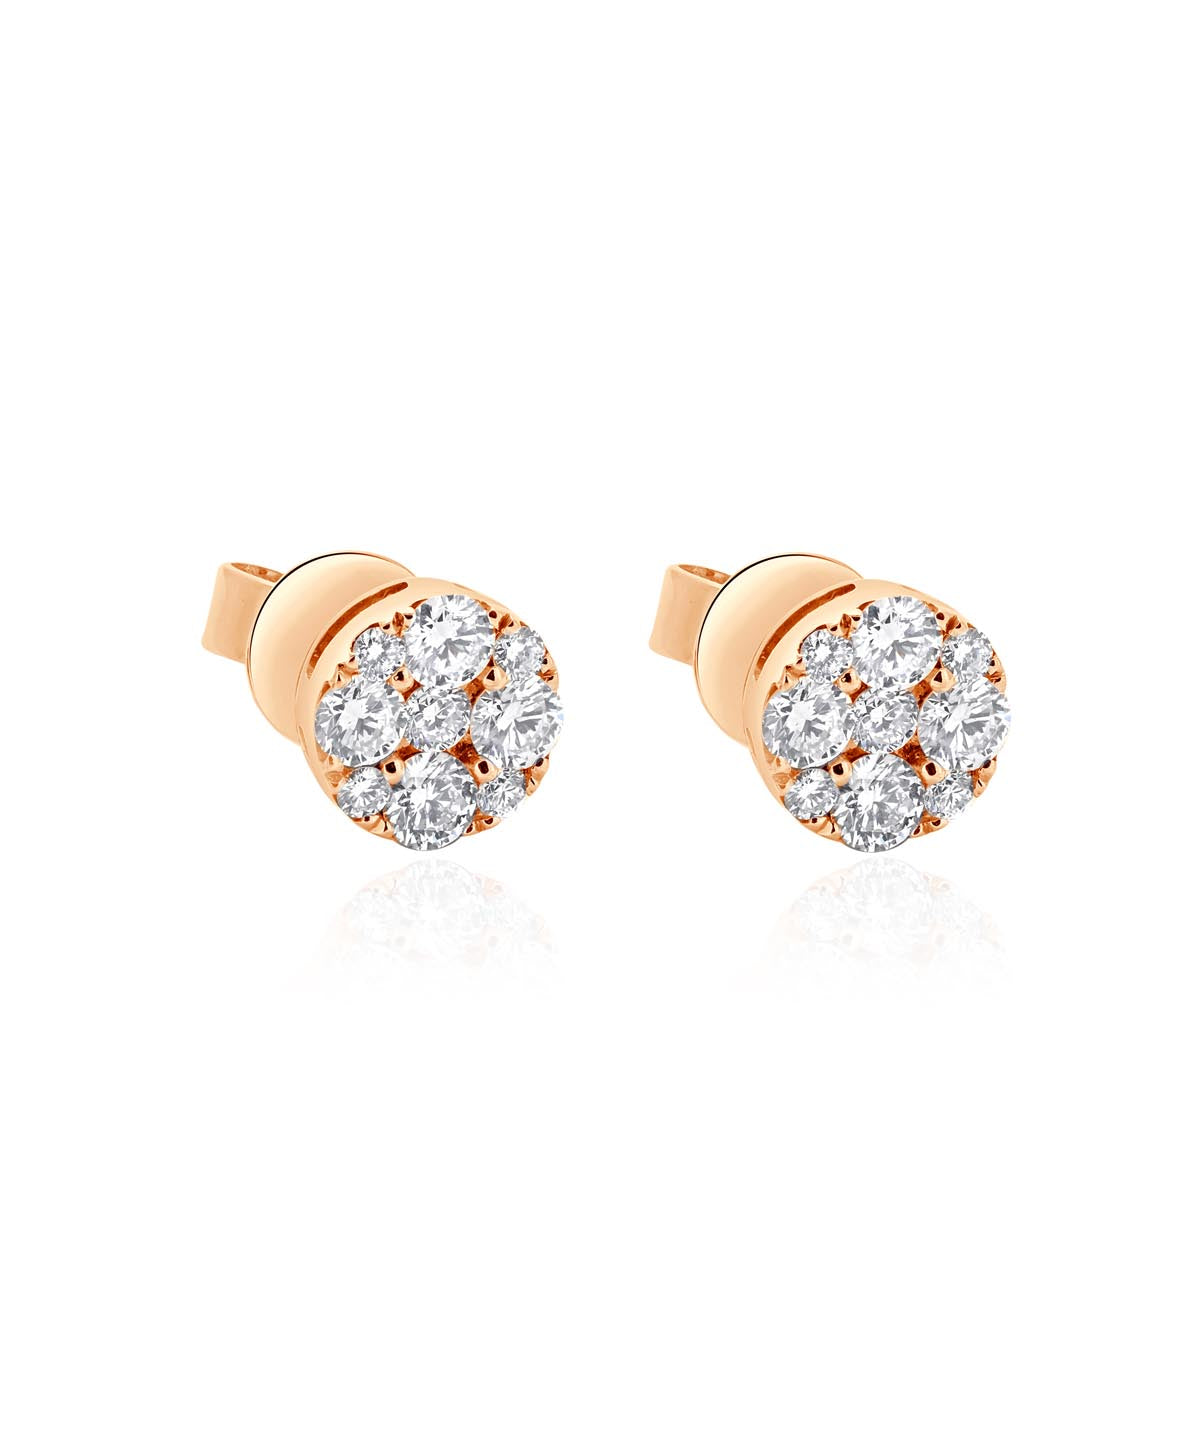 14K Rose Gold Diamond Cluster Stud Earrings